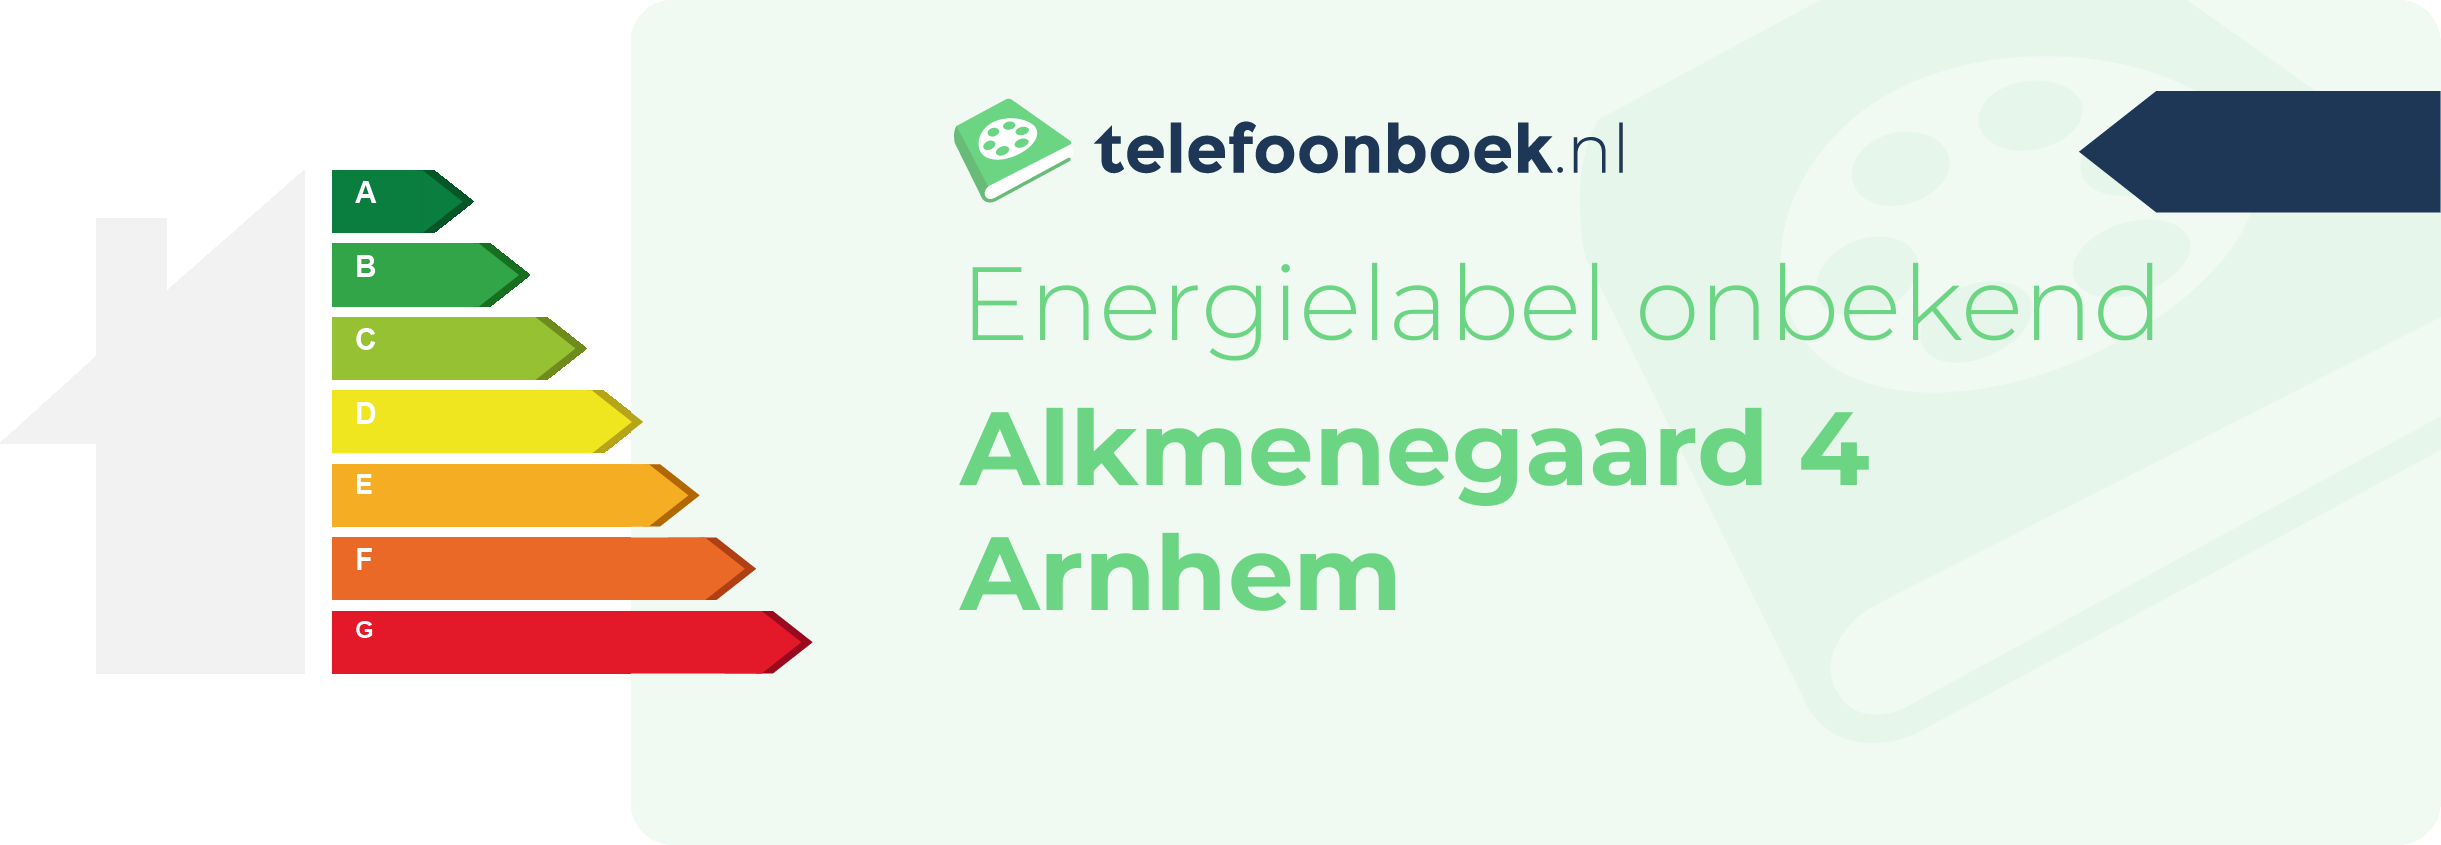 Energielabel Alkmenegaard 4 Arnhem